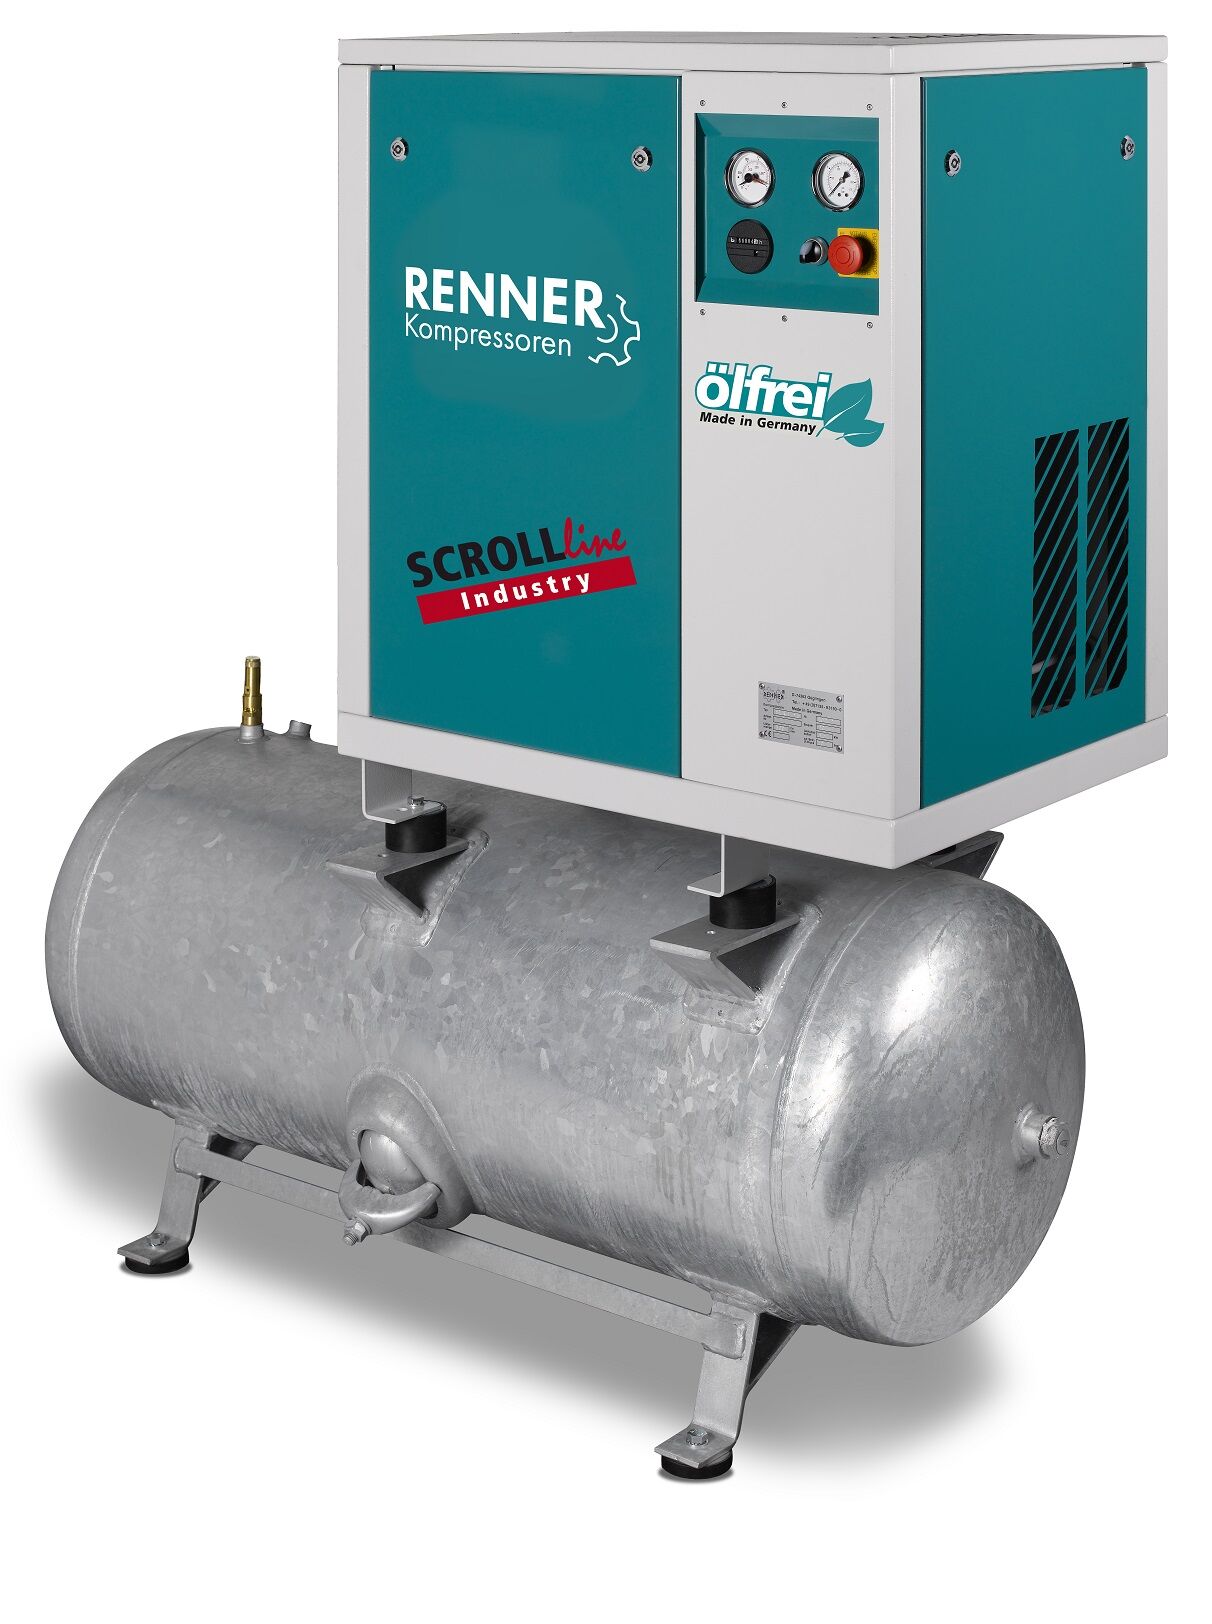 RENNER-Kompressor SLD-I 1,5 auf 90 Liter Druckbehälter - Industry ölfreier Scrollkompressor